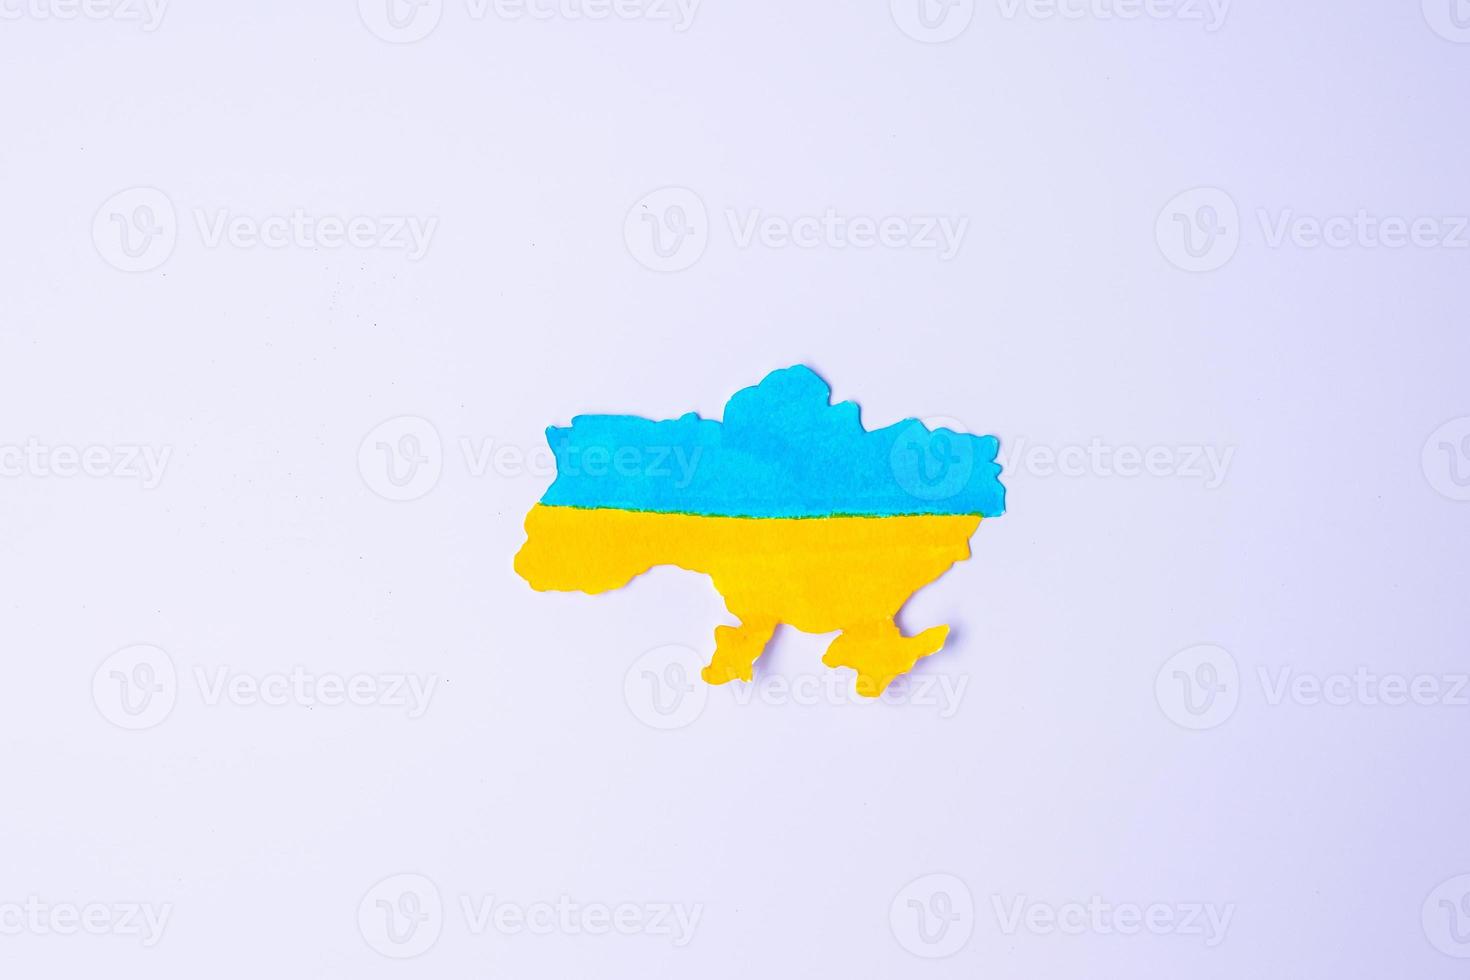 unterstützung für die ukraine im krieg mit russland, die form der ukrainischen grenze mit farbflagge. Bete, kein Krieg, stoppe den Krieg und steh zur Ukraine foto